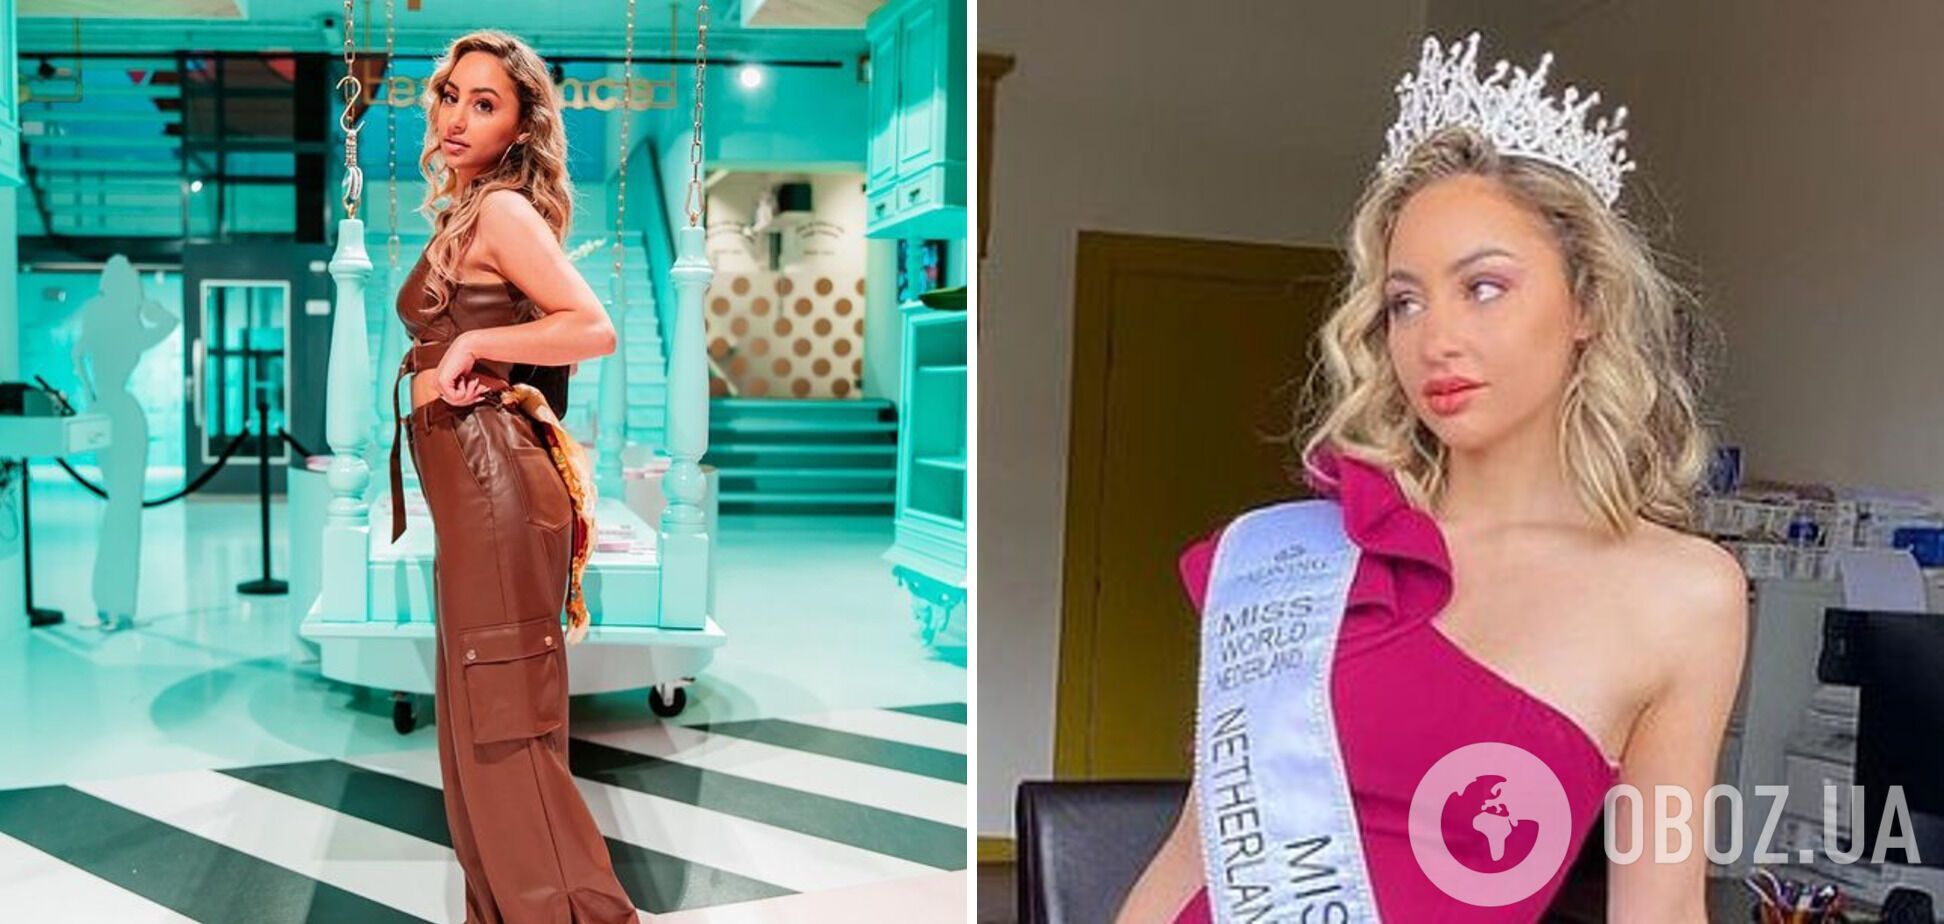 Дилай Марая Виллемстайн отказалась от участия в конкурсе "Мисс мира"